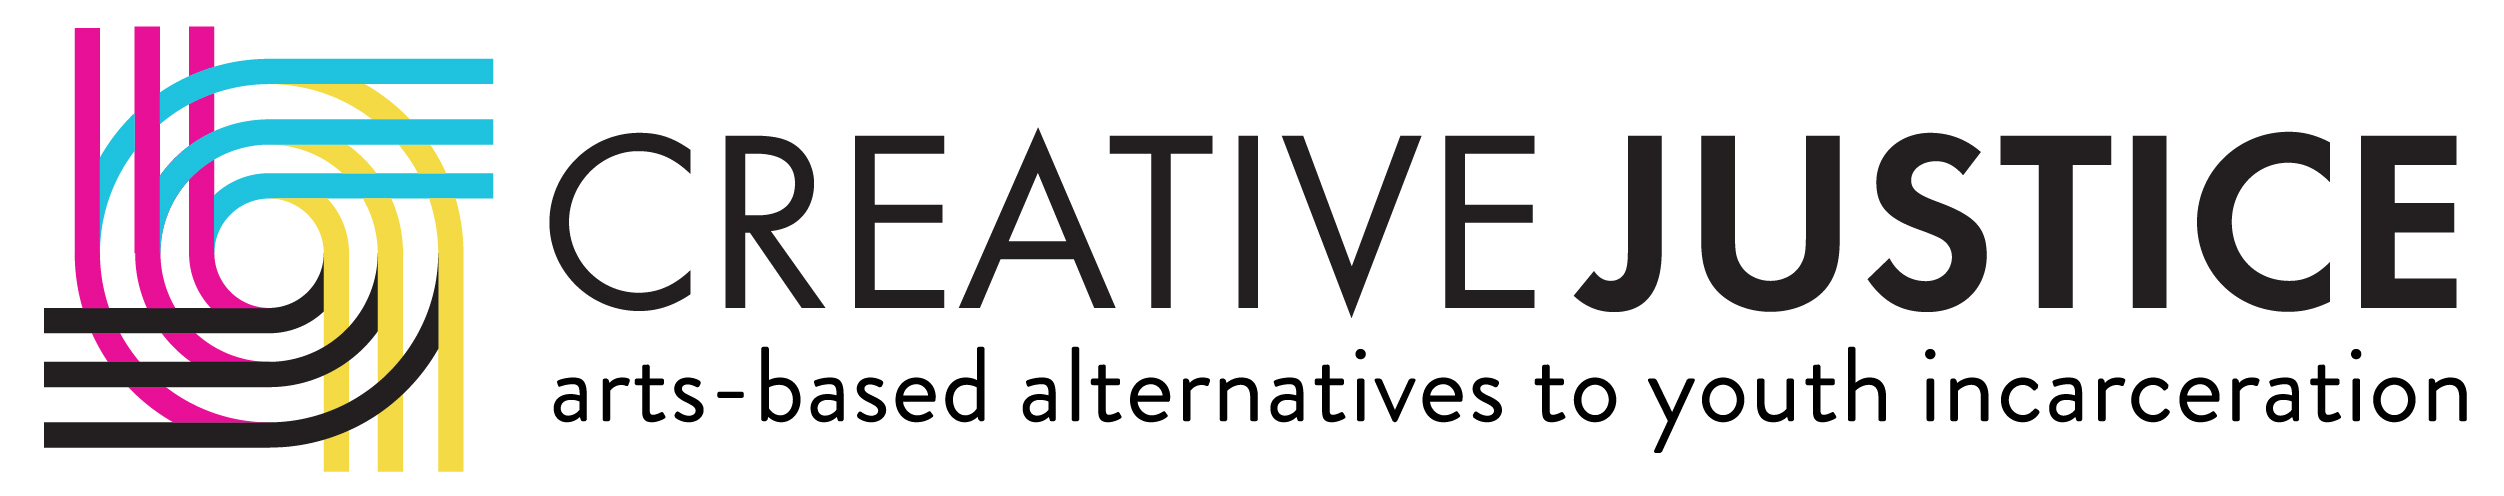 Creative Justice logo